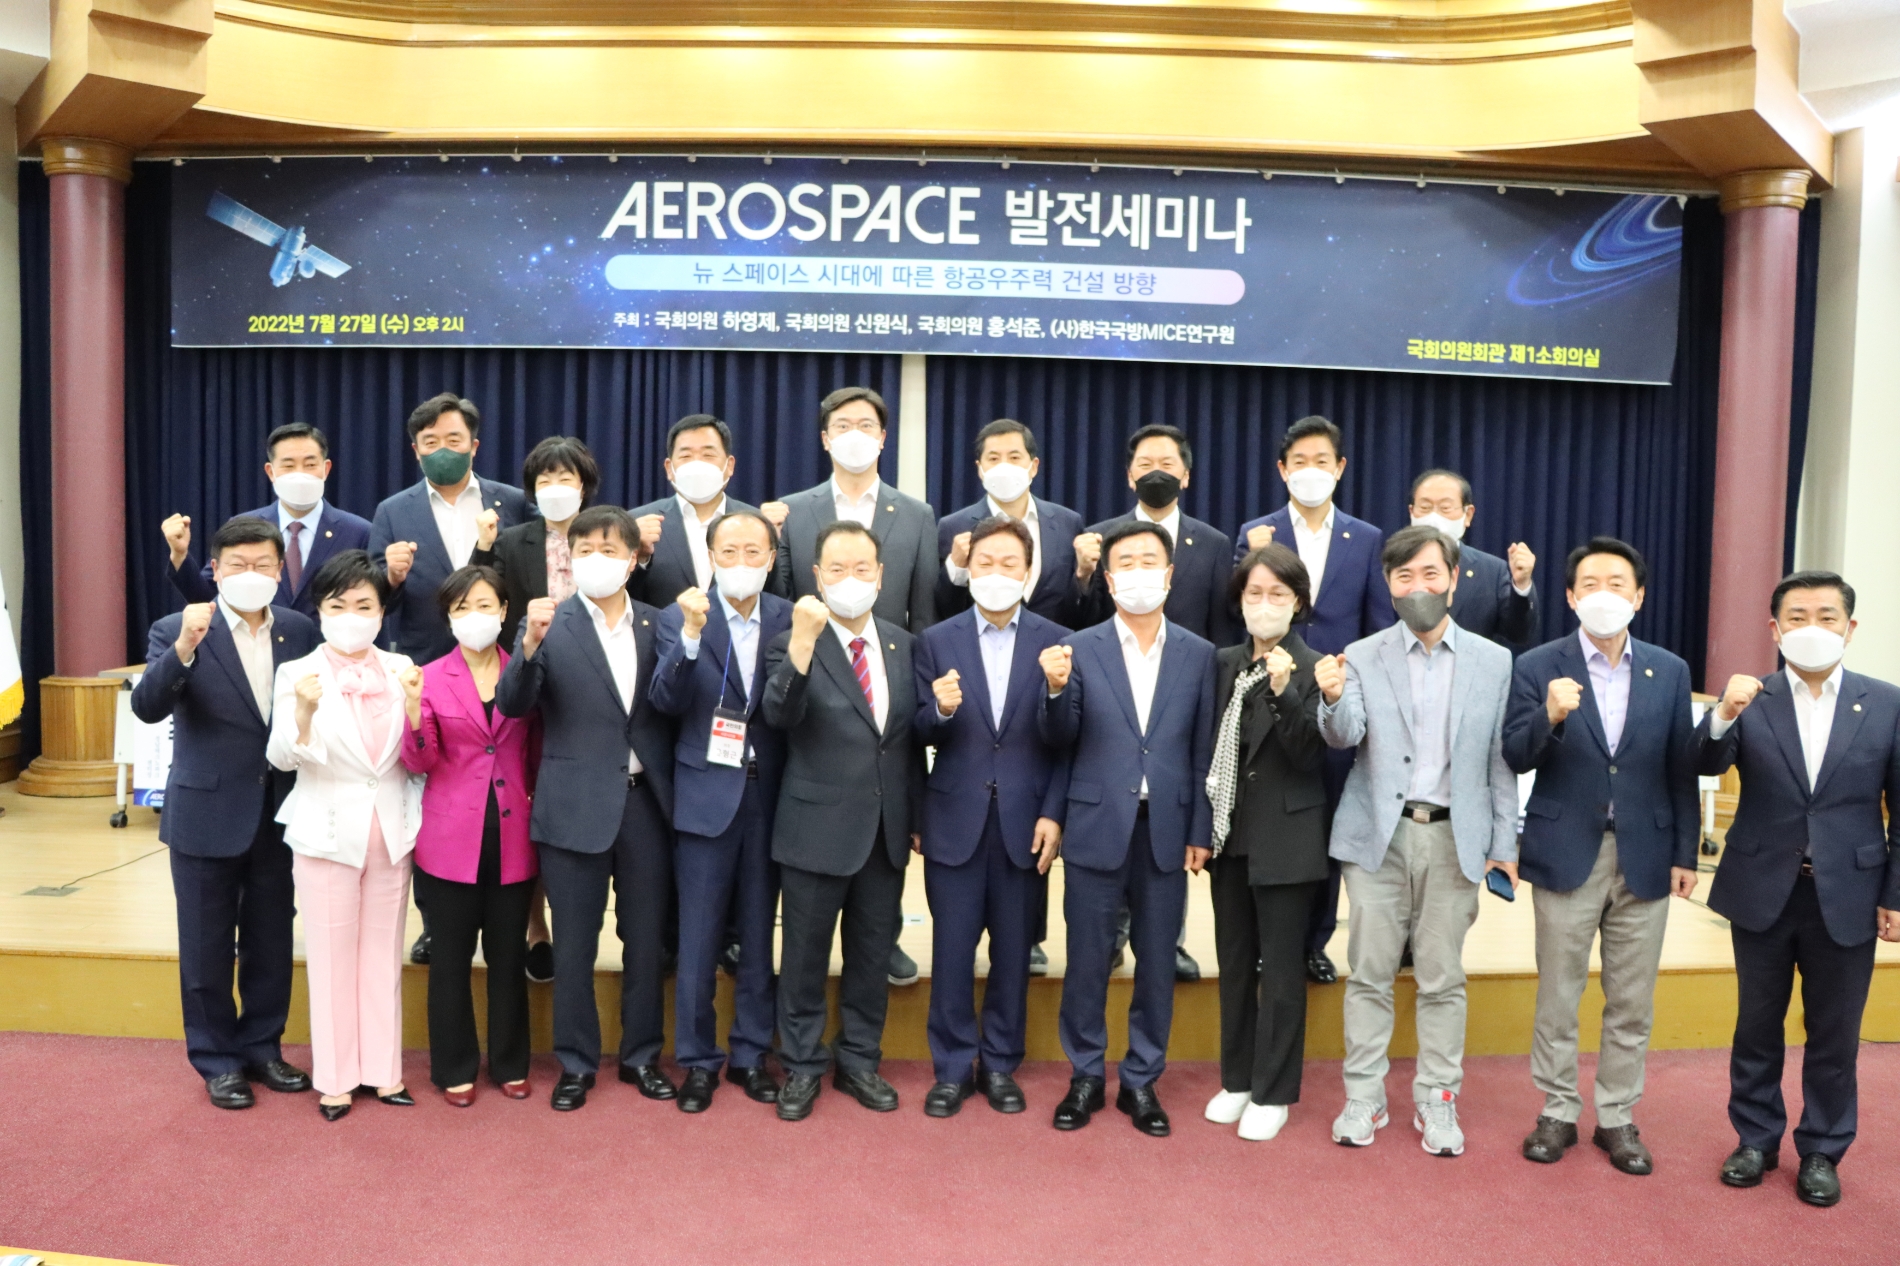 하영제 의원, 항공우주 발전 위한 ‘Aerospace 발전 세미나’ 개최